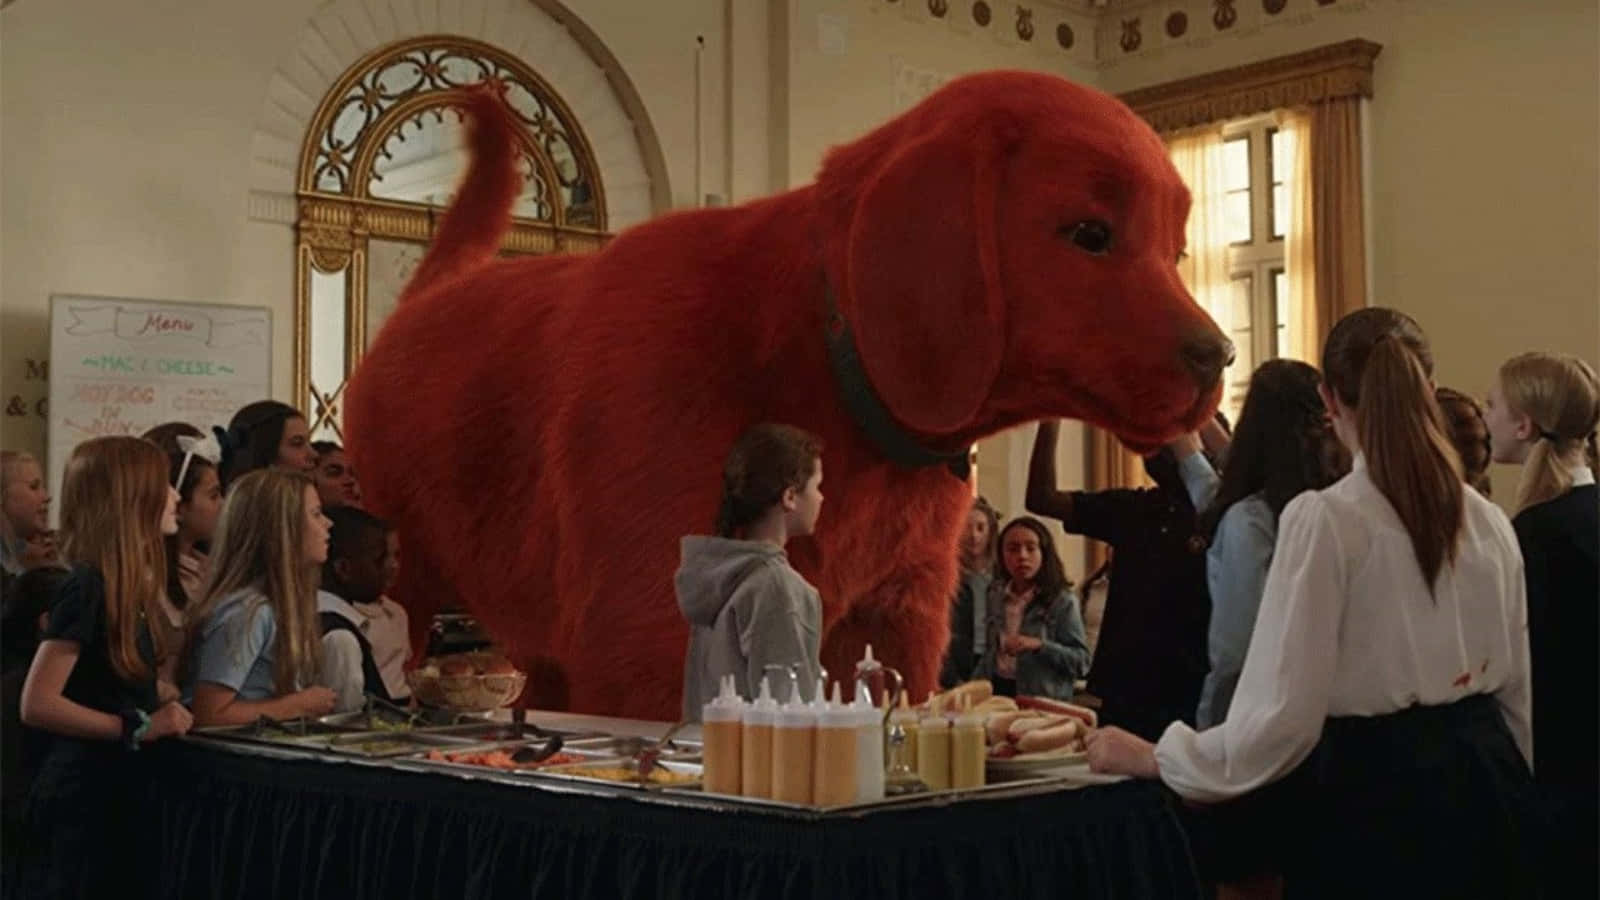 Eingroßer Roter Hund Steht Vor Einer Gruppe Von Menschen.